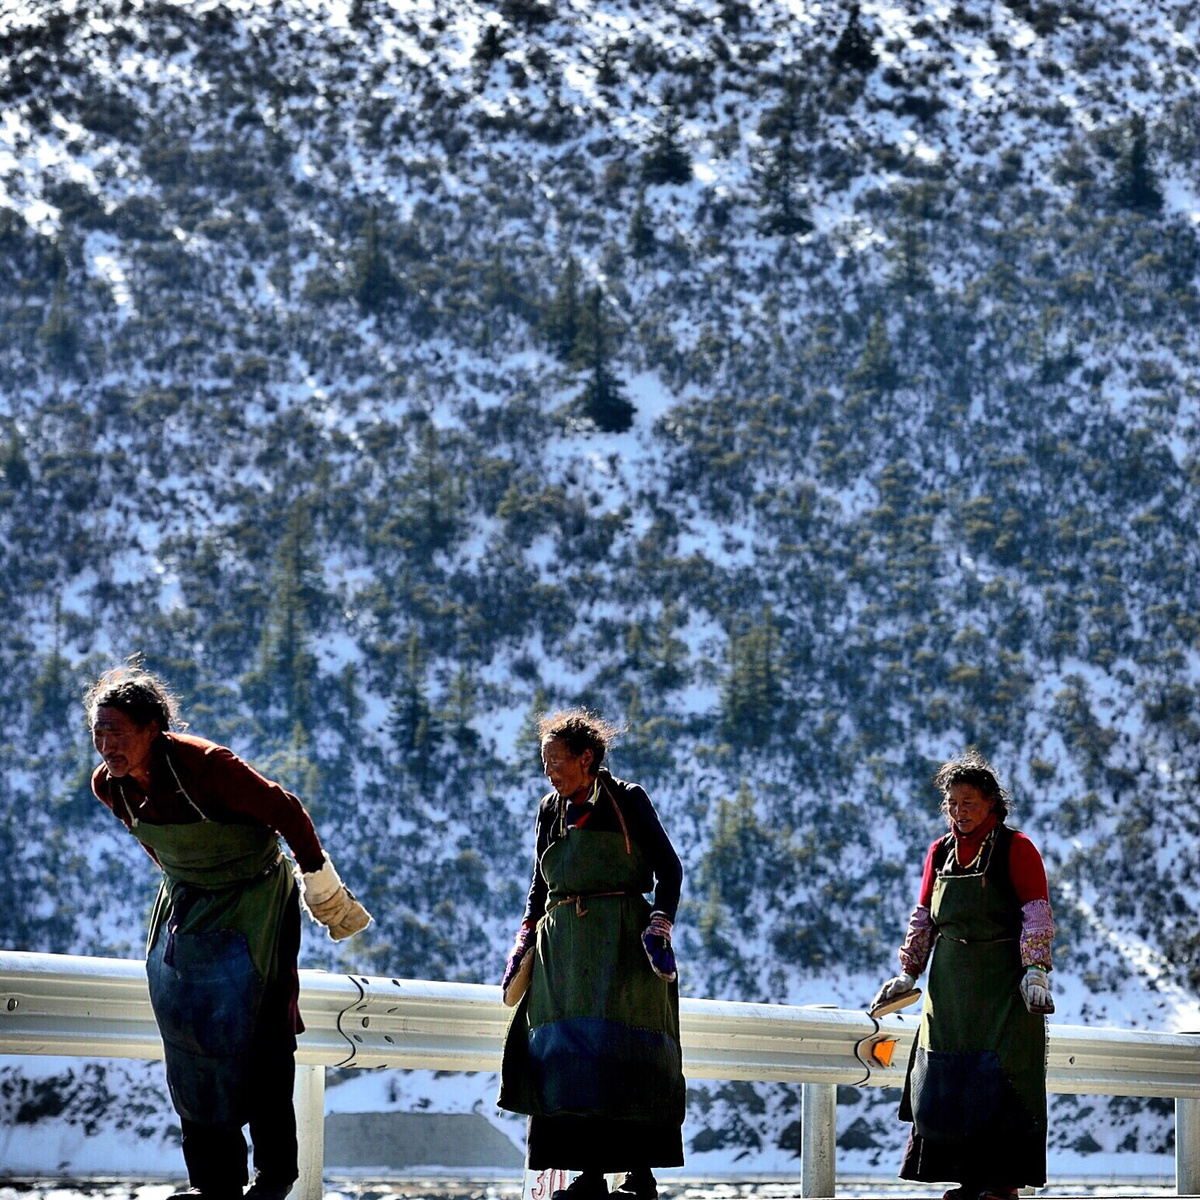 人们站在雪地里的桥上 背景是一座雪山